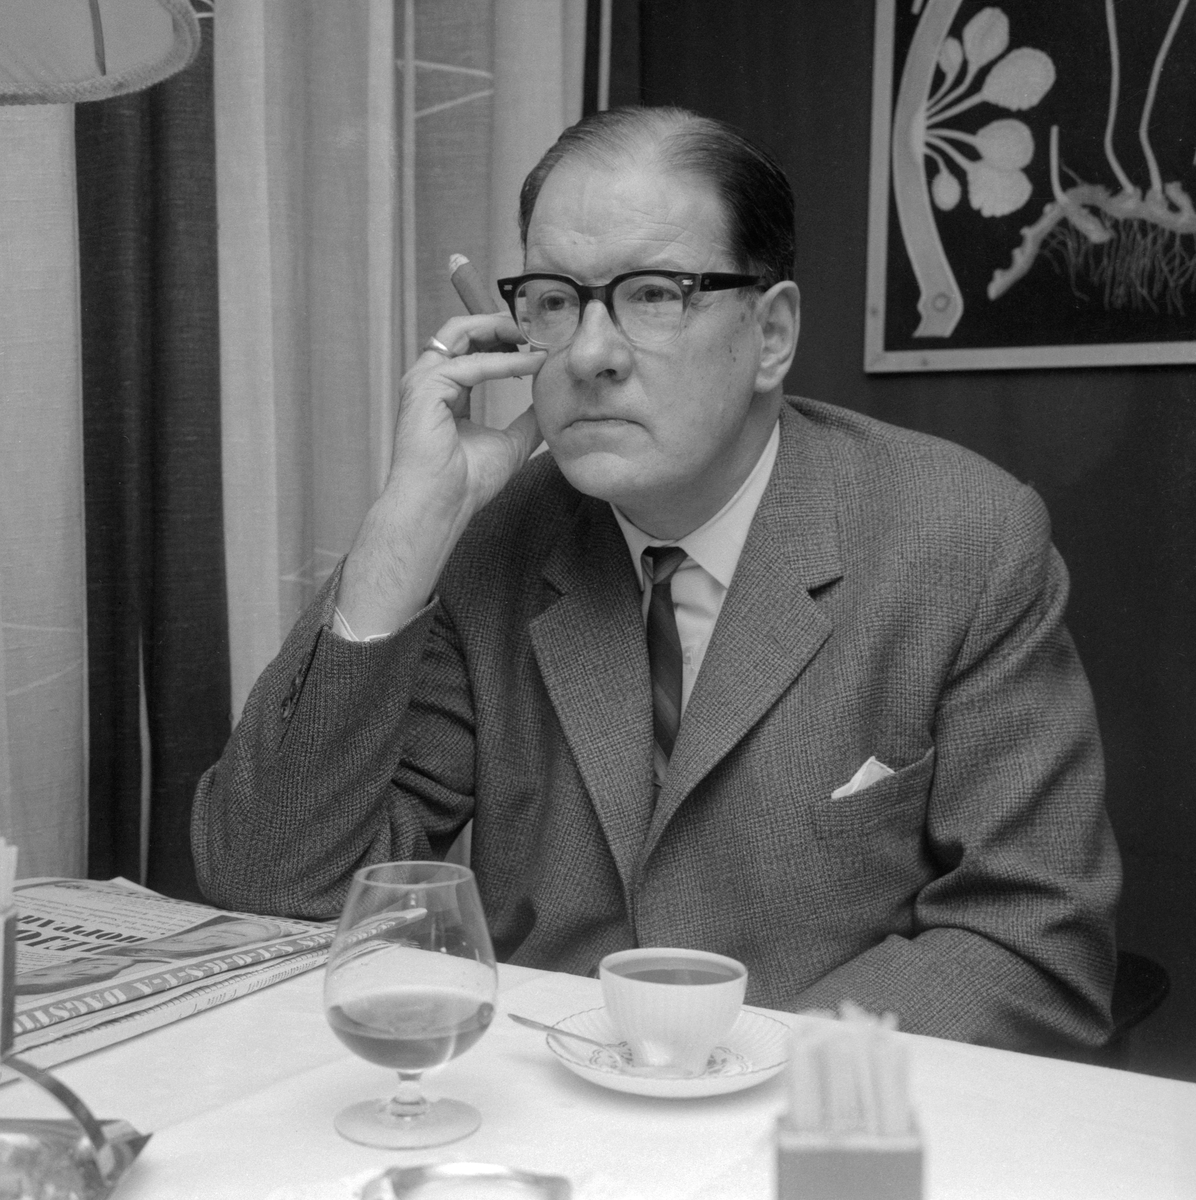 Författare, översättare, journalist och litteraturforskare är några titlar som kan knytas till den intellektuelle Sven Stolpe. Under perioden 1964-1972 tjänstgjorde han som läroverkslektor i Mjölby. Här porträtterad 1965.